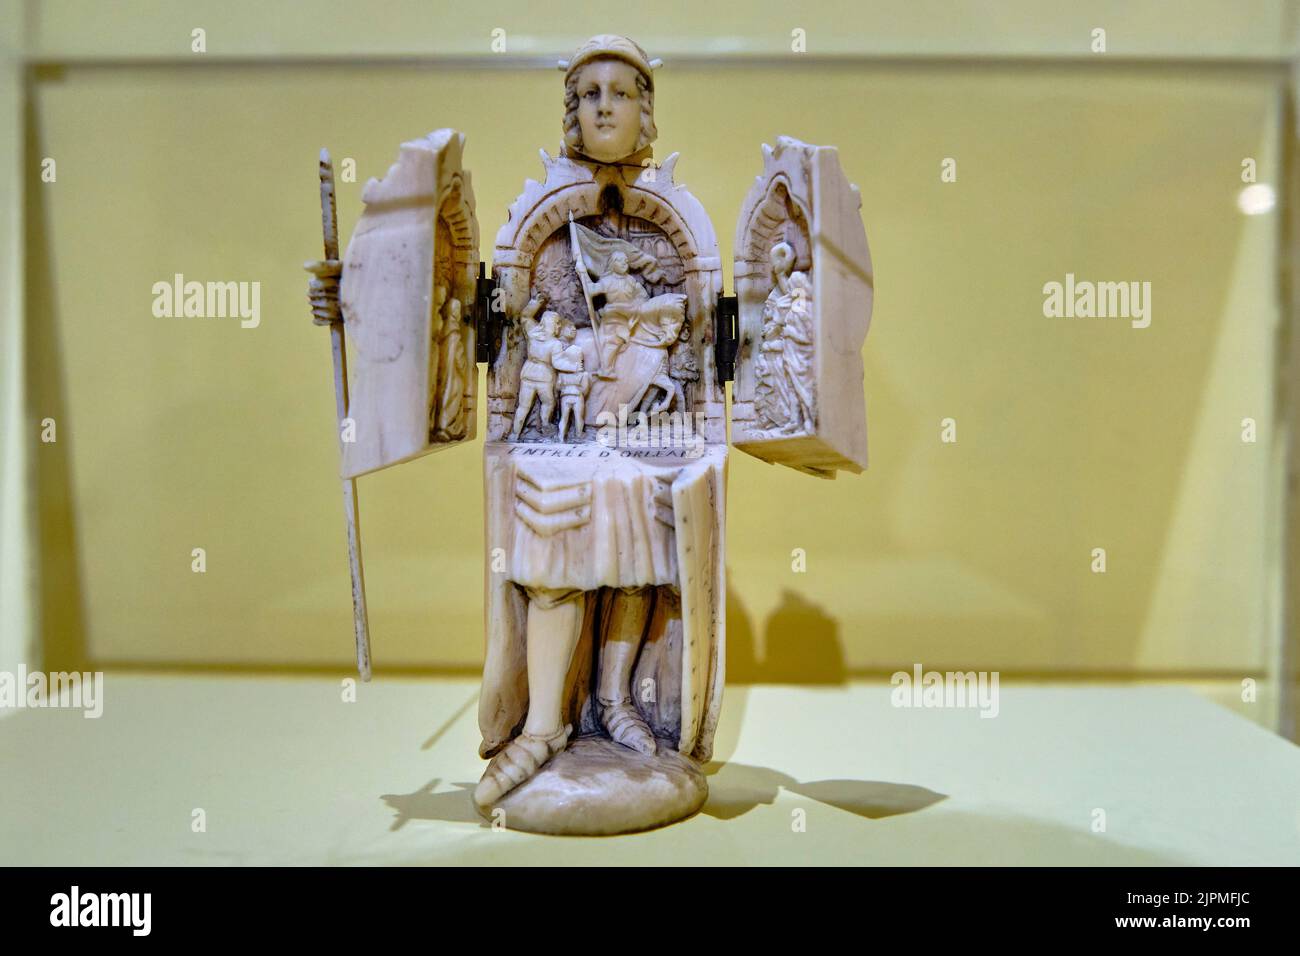 France, Loiret, Orléans, Hôtel Cabu, Musée d'Histoire et d'Archéologie d'Orléans, statuette de Jeanne d'Arc formant un triptyque de l'entrée de Jeanne d'Orléans Banque D'Images